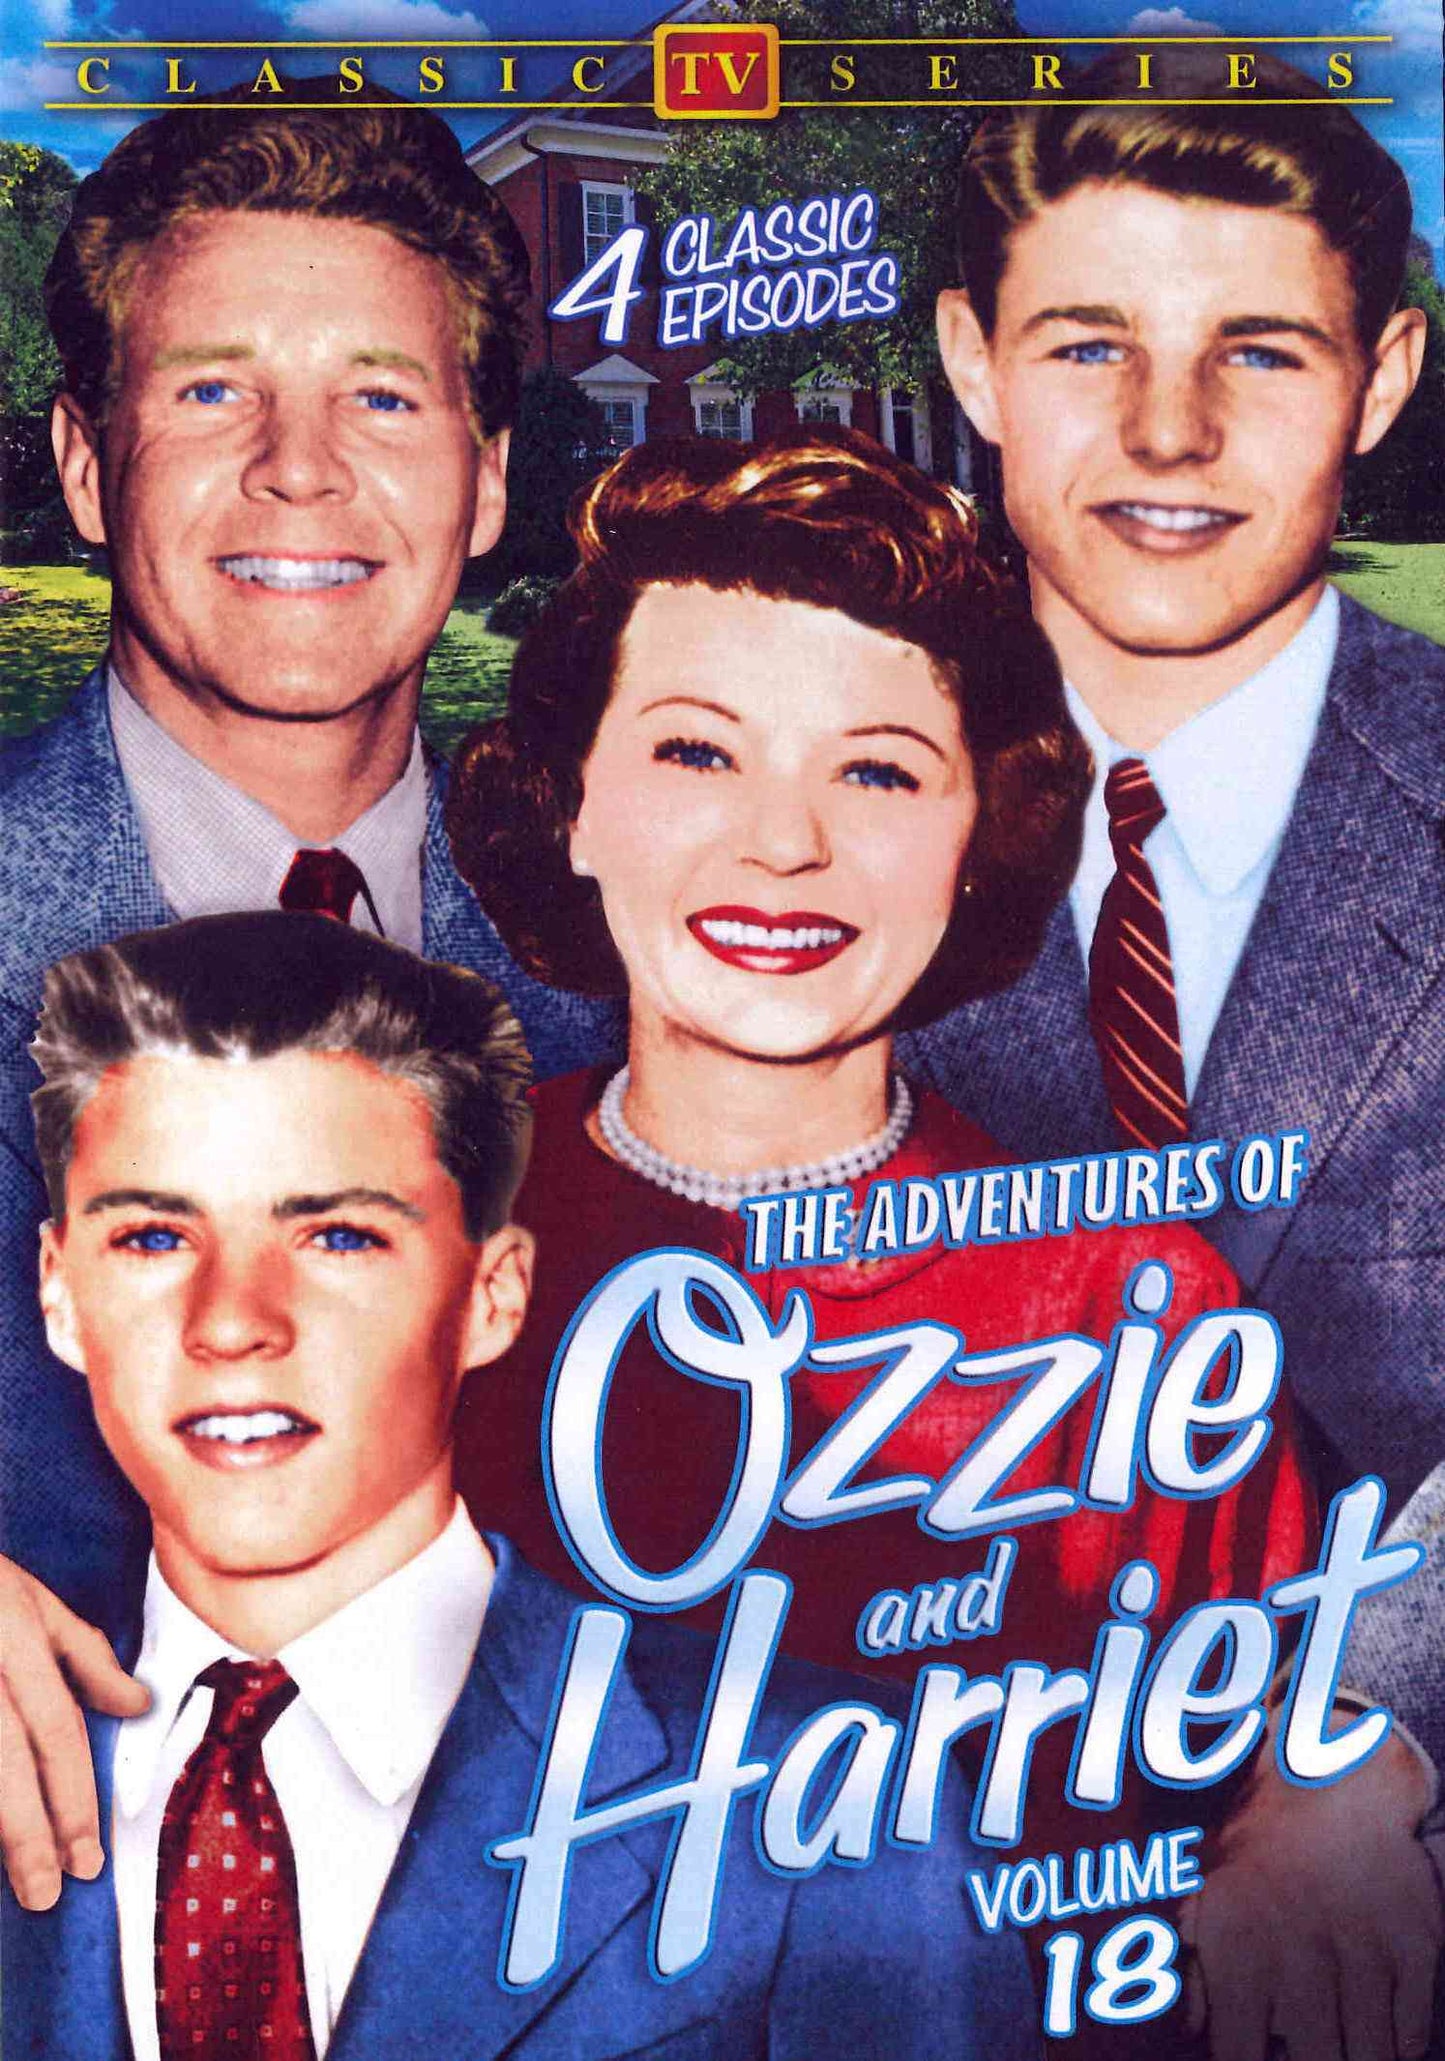 Adventures of Ozzie & Harriet, Vol. 18 cover art